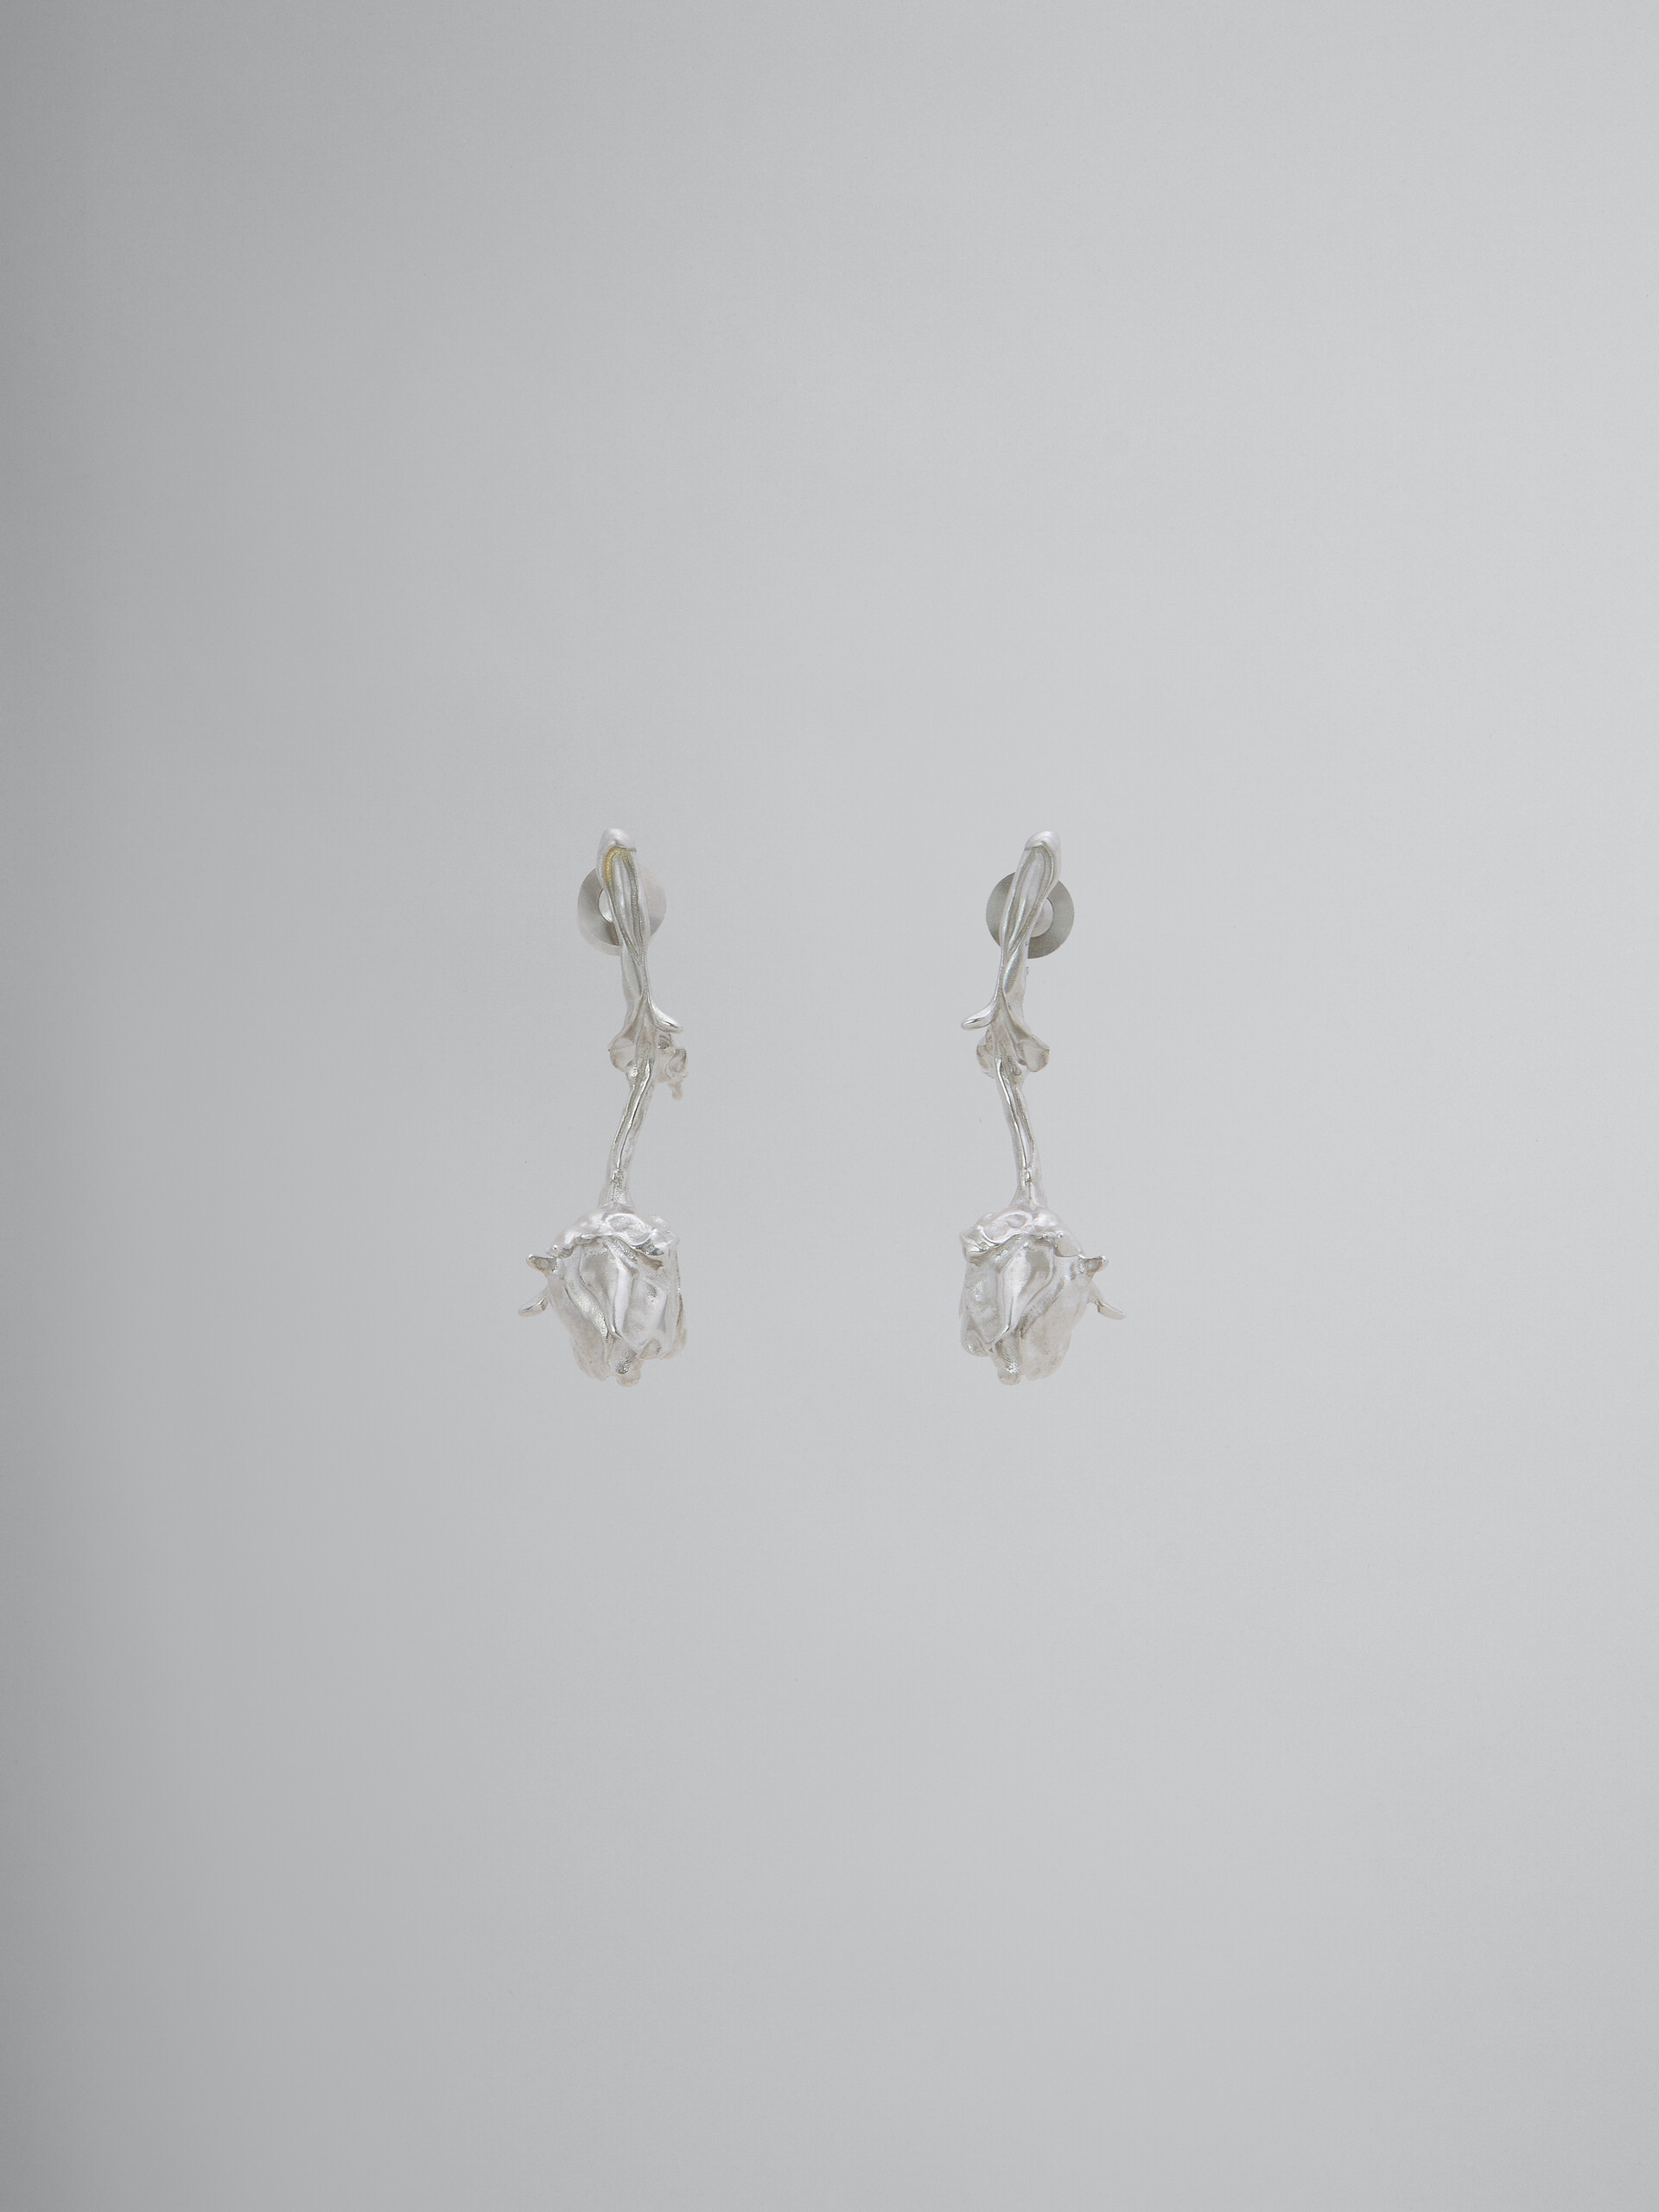 Metal rose bud earrings - Earrings - Image 1